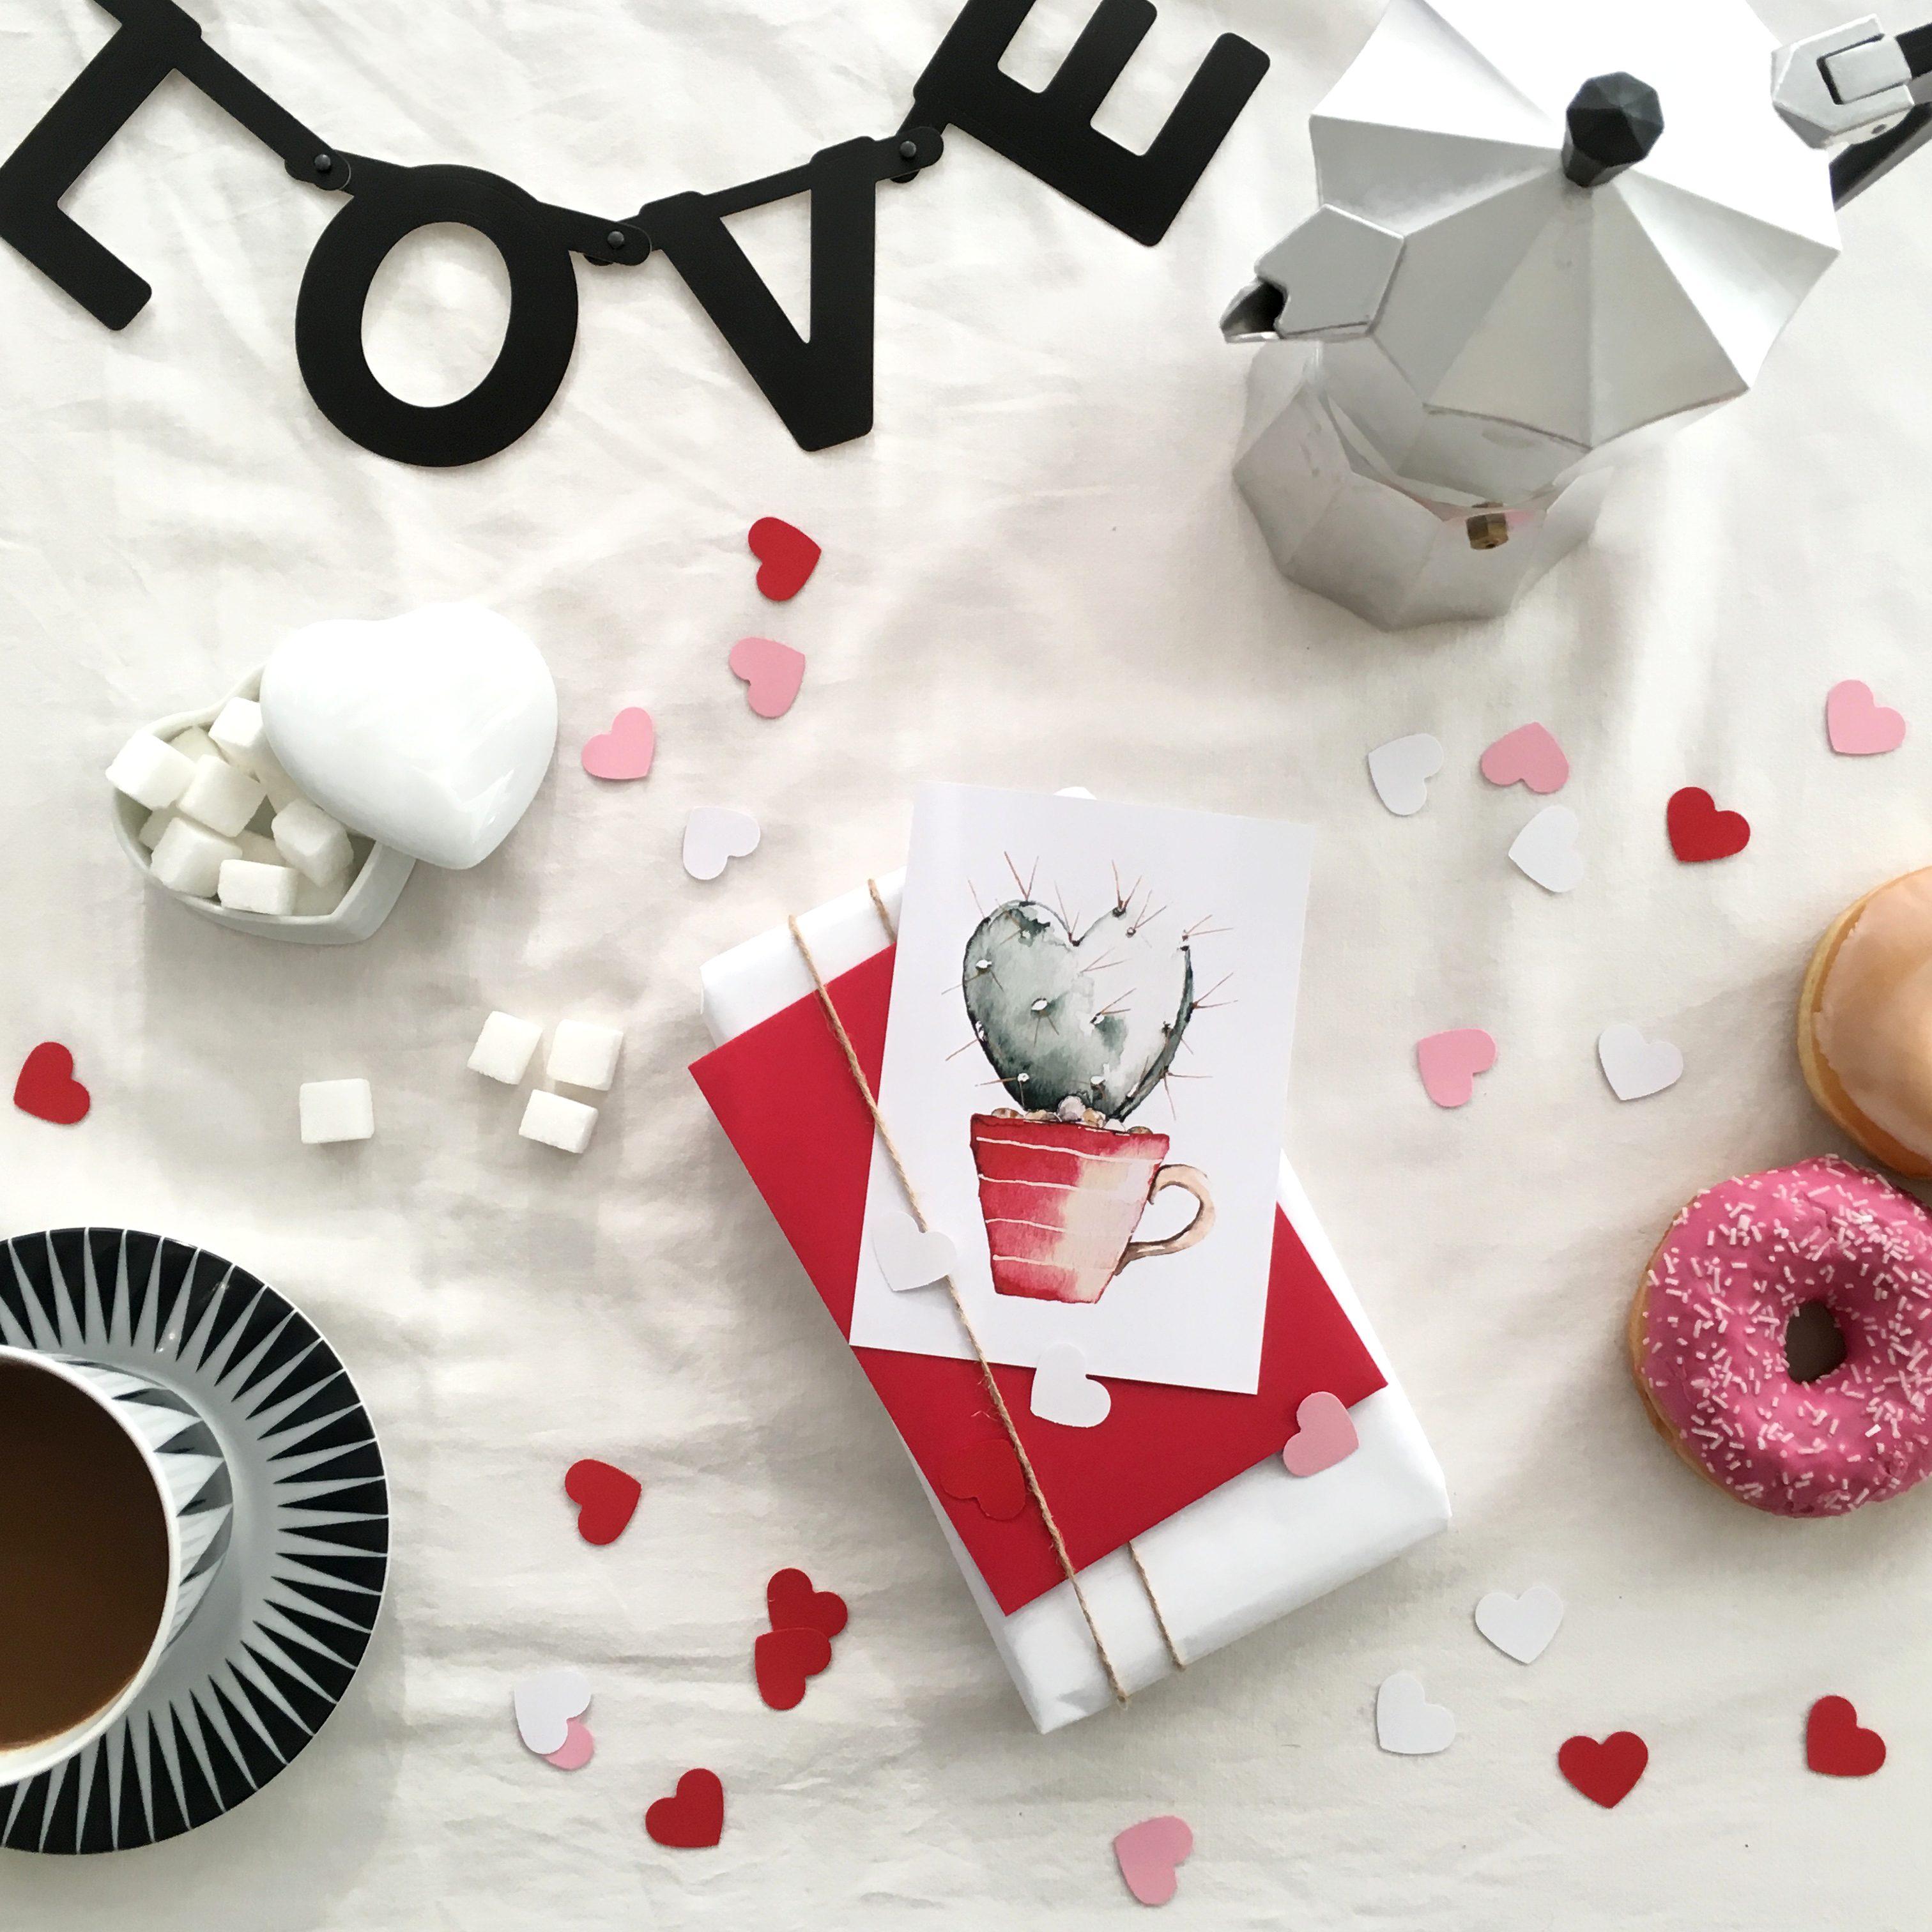 Bald ist #Valentinstag :) #postkarten #liebe #hygge #deko #donut #frühstück #herz #geschenk #handmade #diy